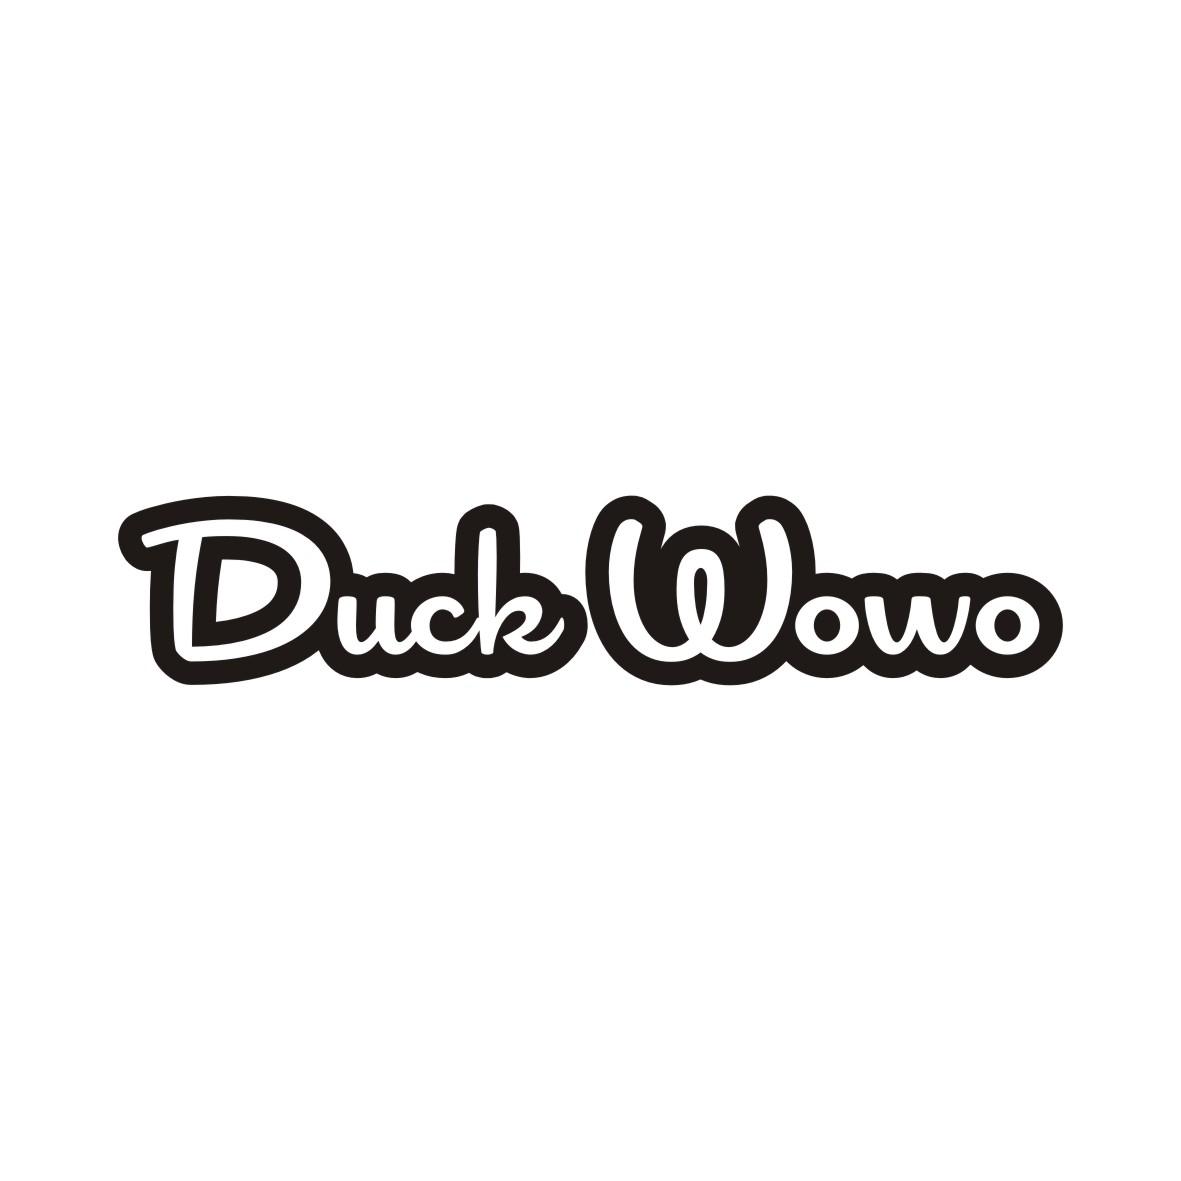 08类-工具器械DUCK WOWO商标转让